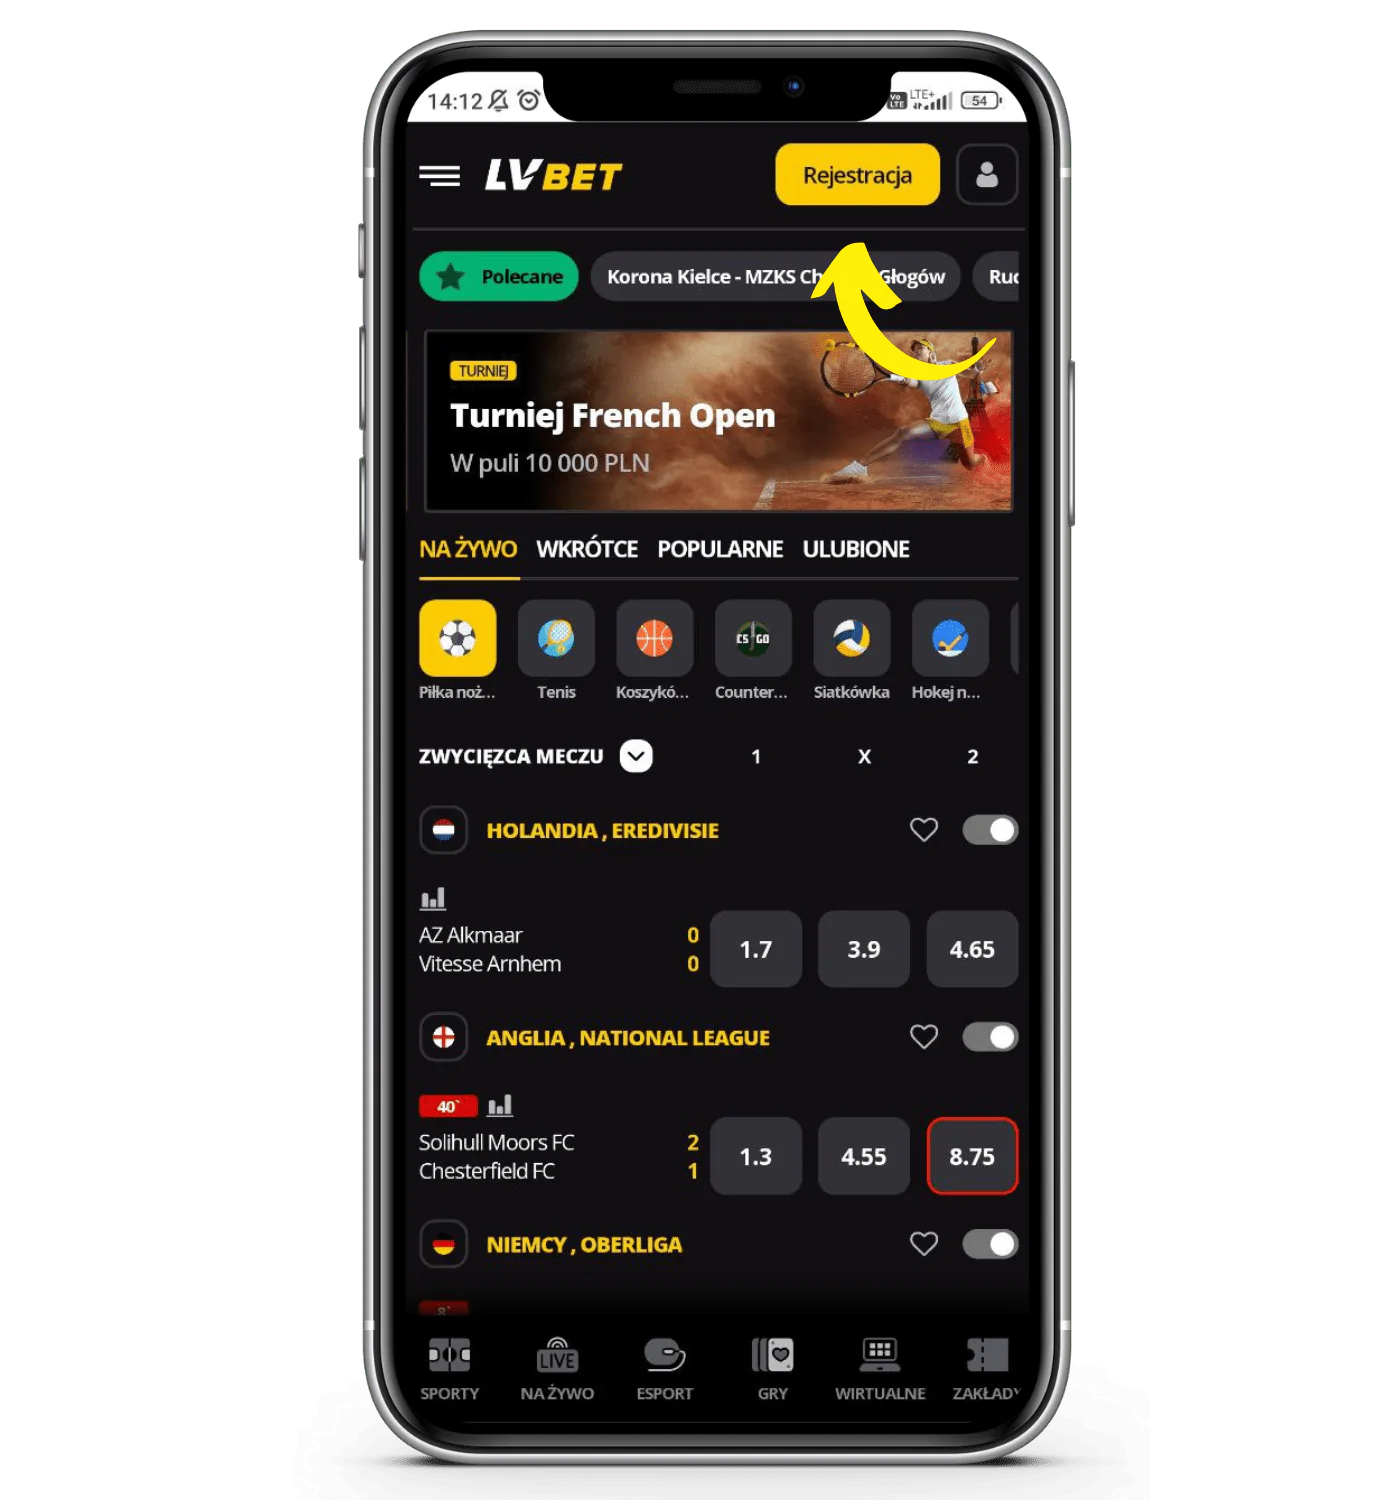 Krok 3 rejestracji w aplikacji mobilnej LVBET - wciśnij żółty przycisk rejestracji w prawym górnym rogu i przejdź do formularza